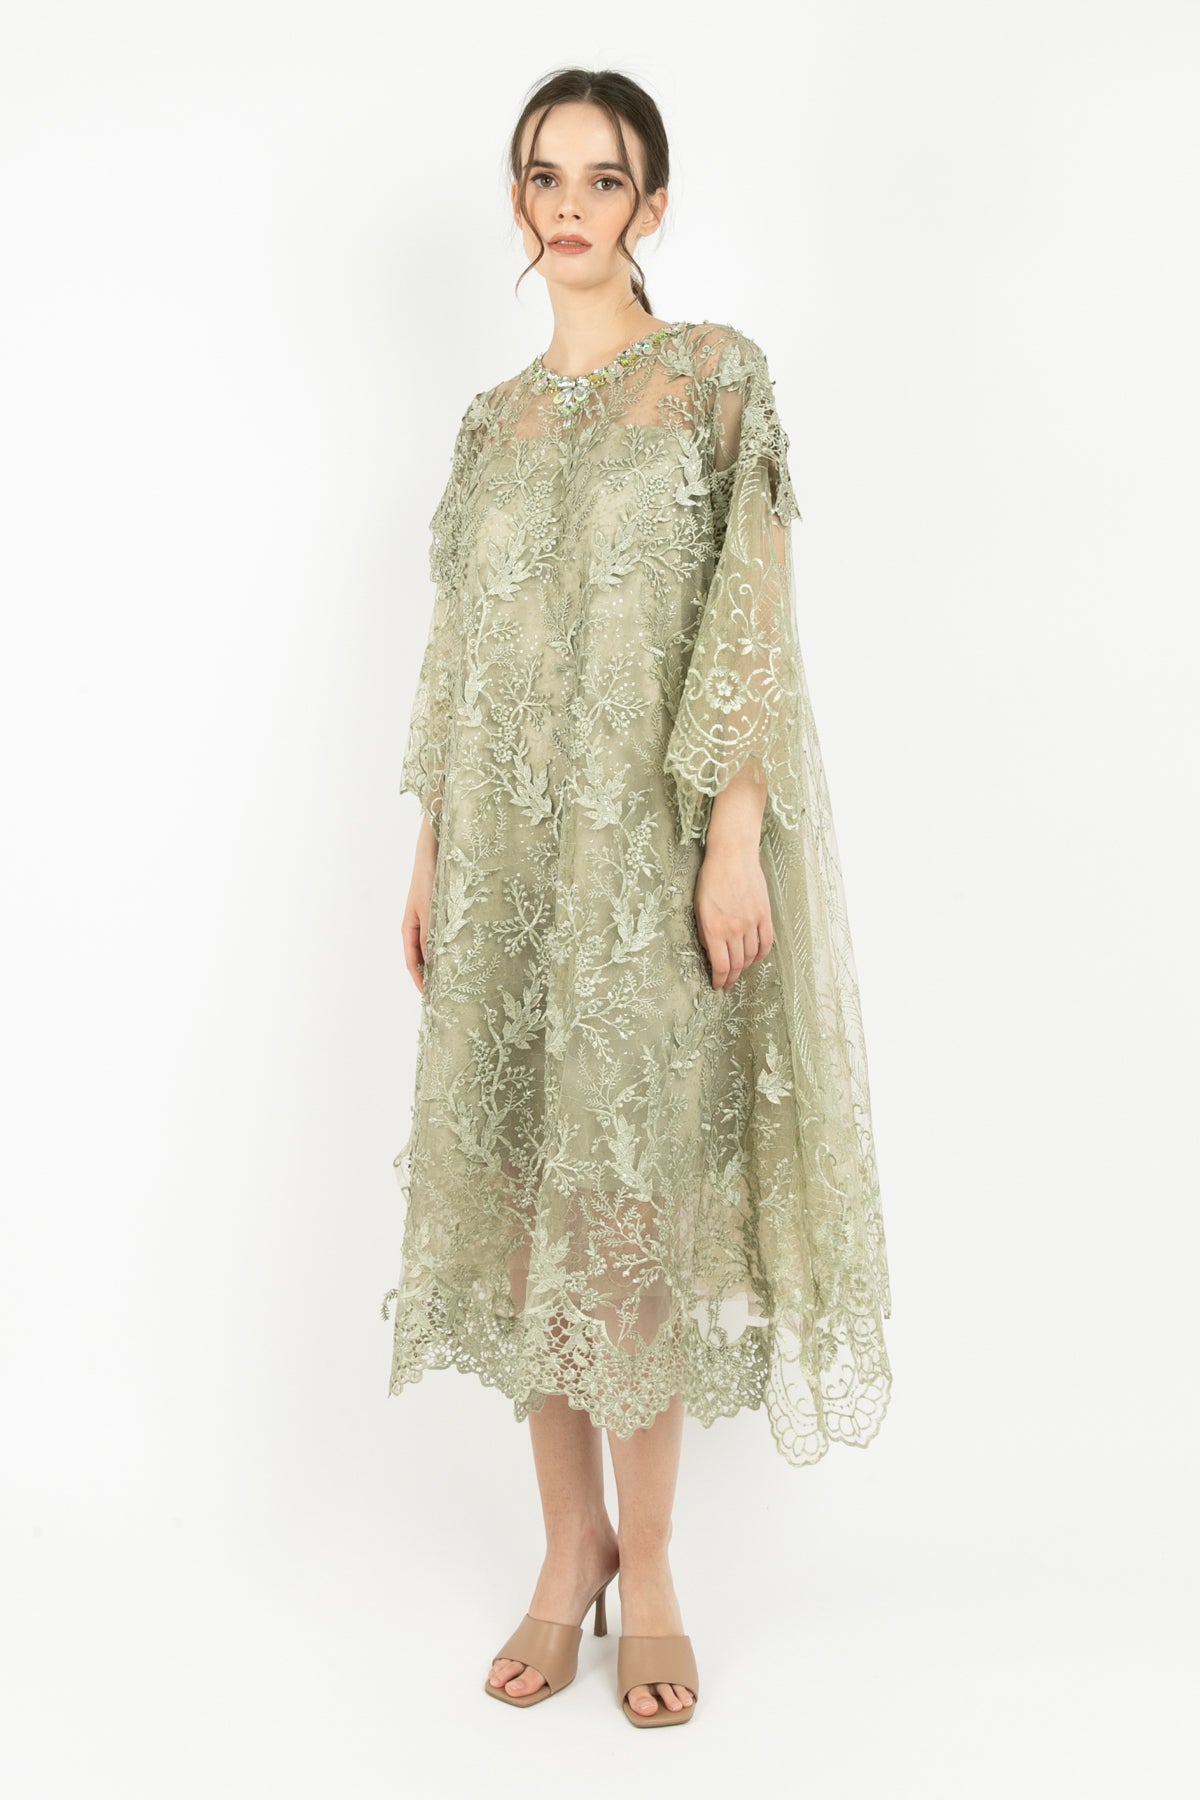 Vivienne Dress in Sage Green